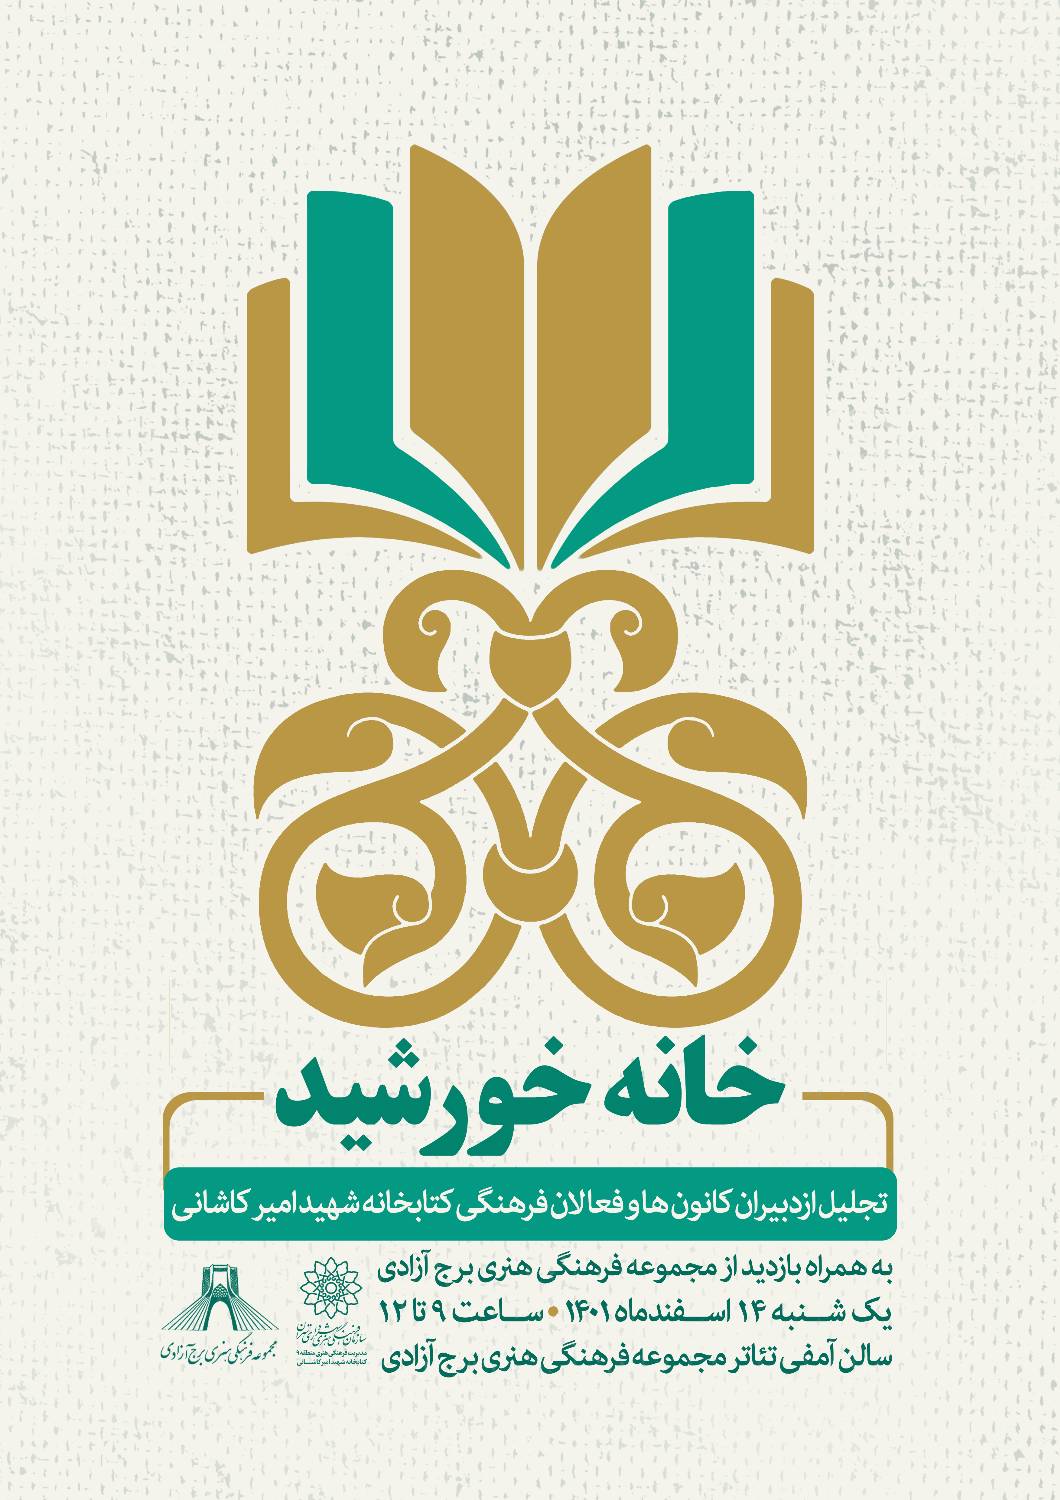 کتابخانه شهید کاشانی میزبان فعالان فرهنگی در 